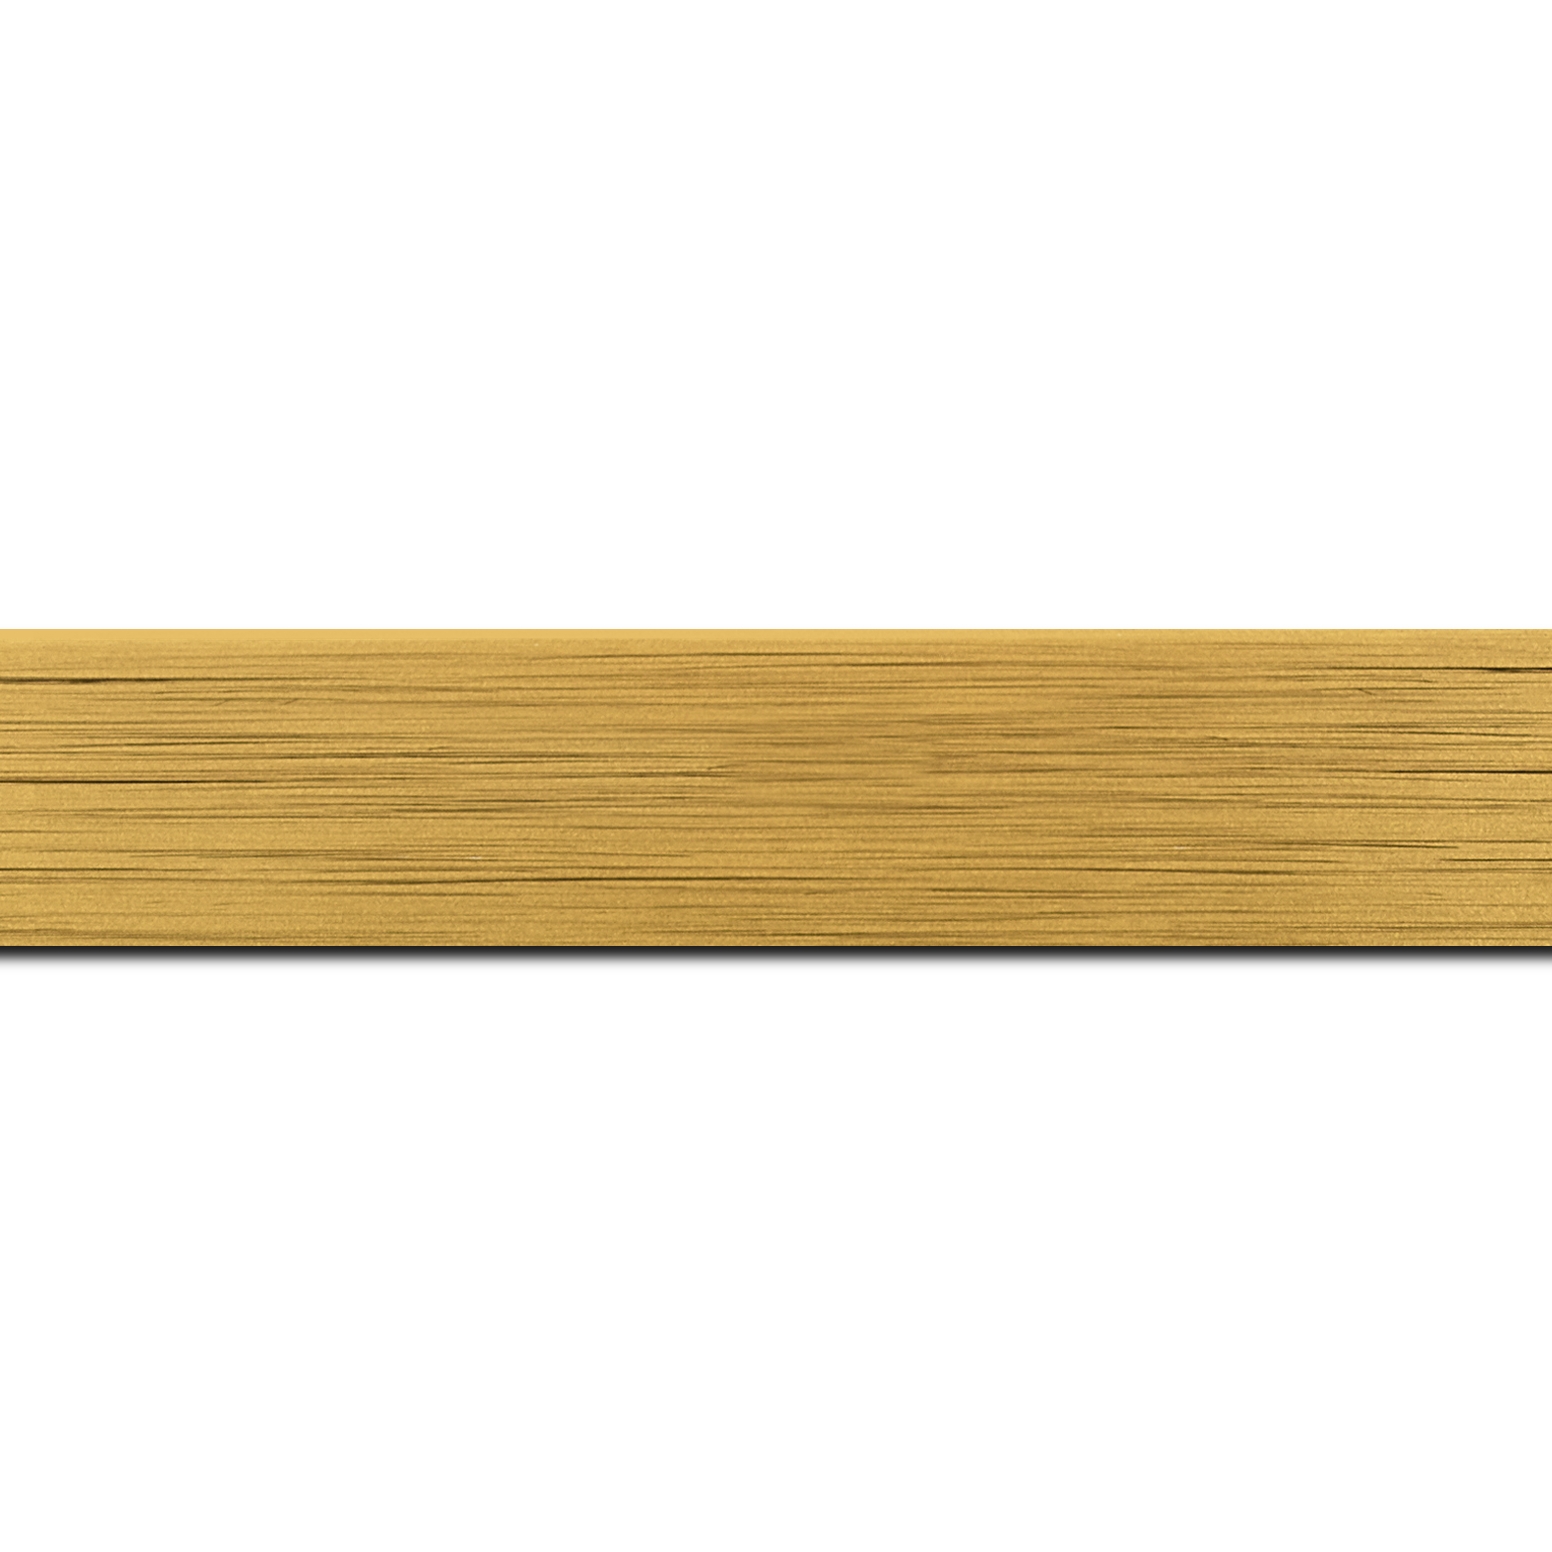 Baguette longueur 1.40m bois profil plat largeur 3cm couleur or effet cube (le sujet qui sera glissé dans le cadre sera en retrait de la face du cadre de 1.4cm assurant un effet très contemporain)